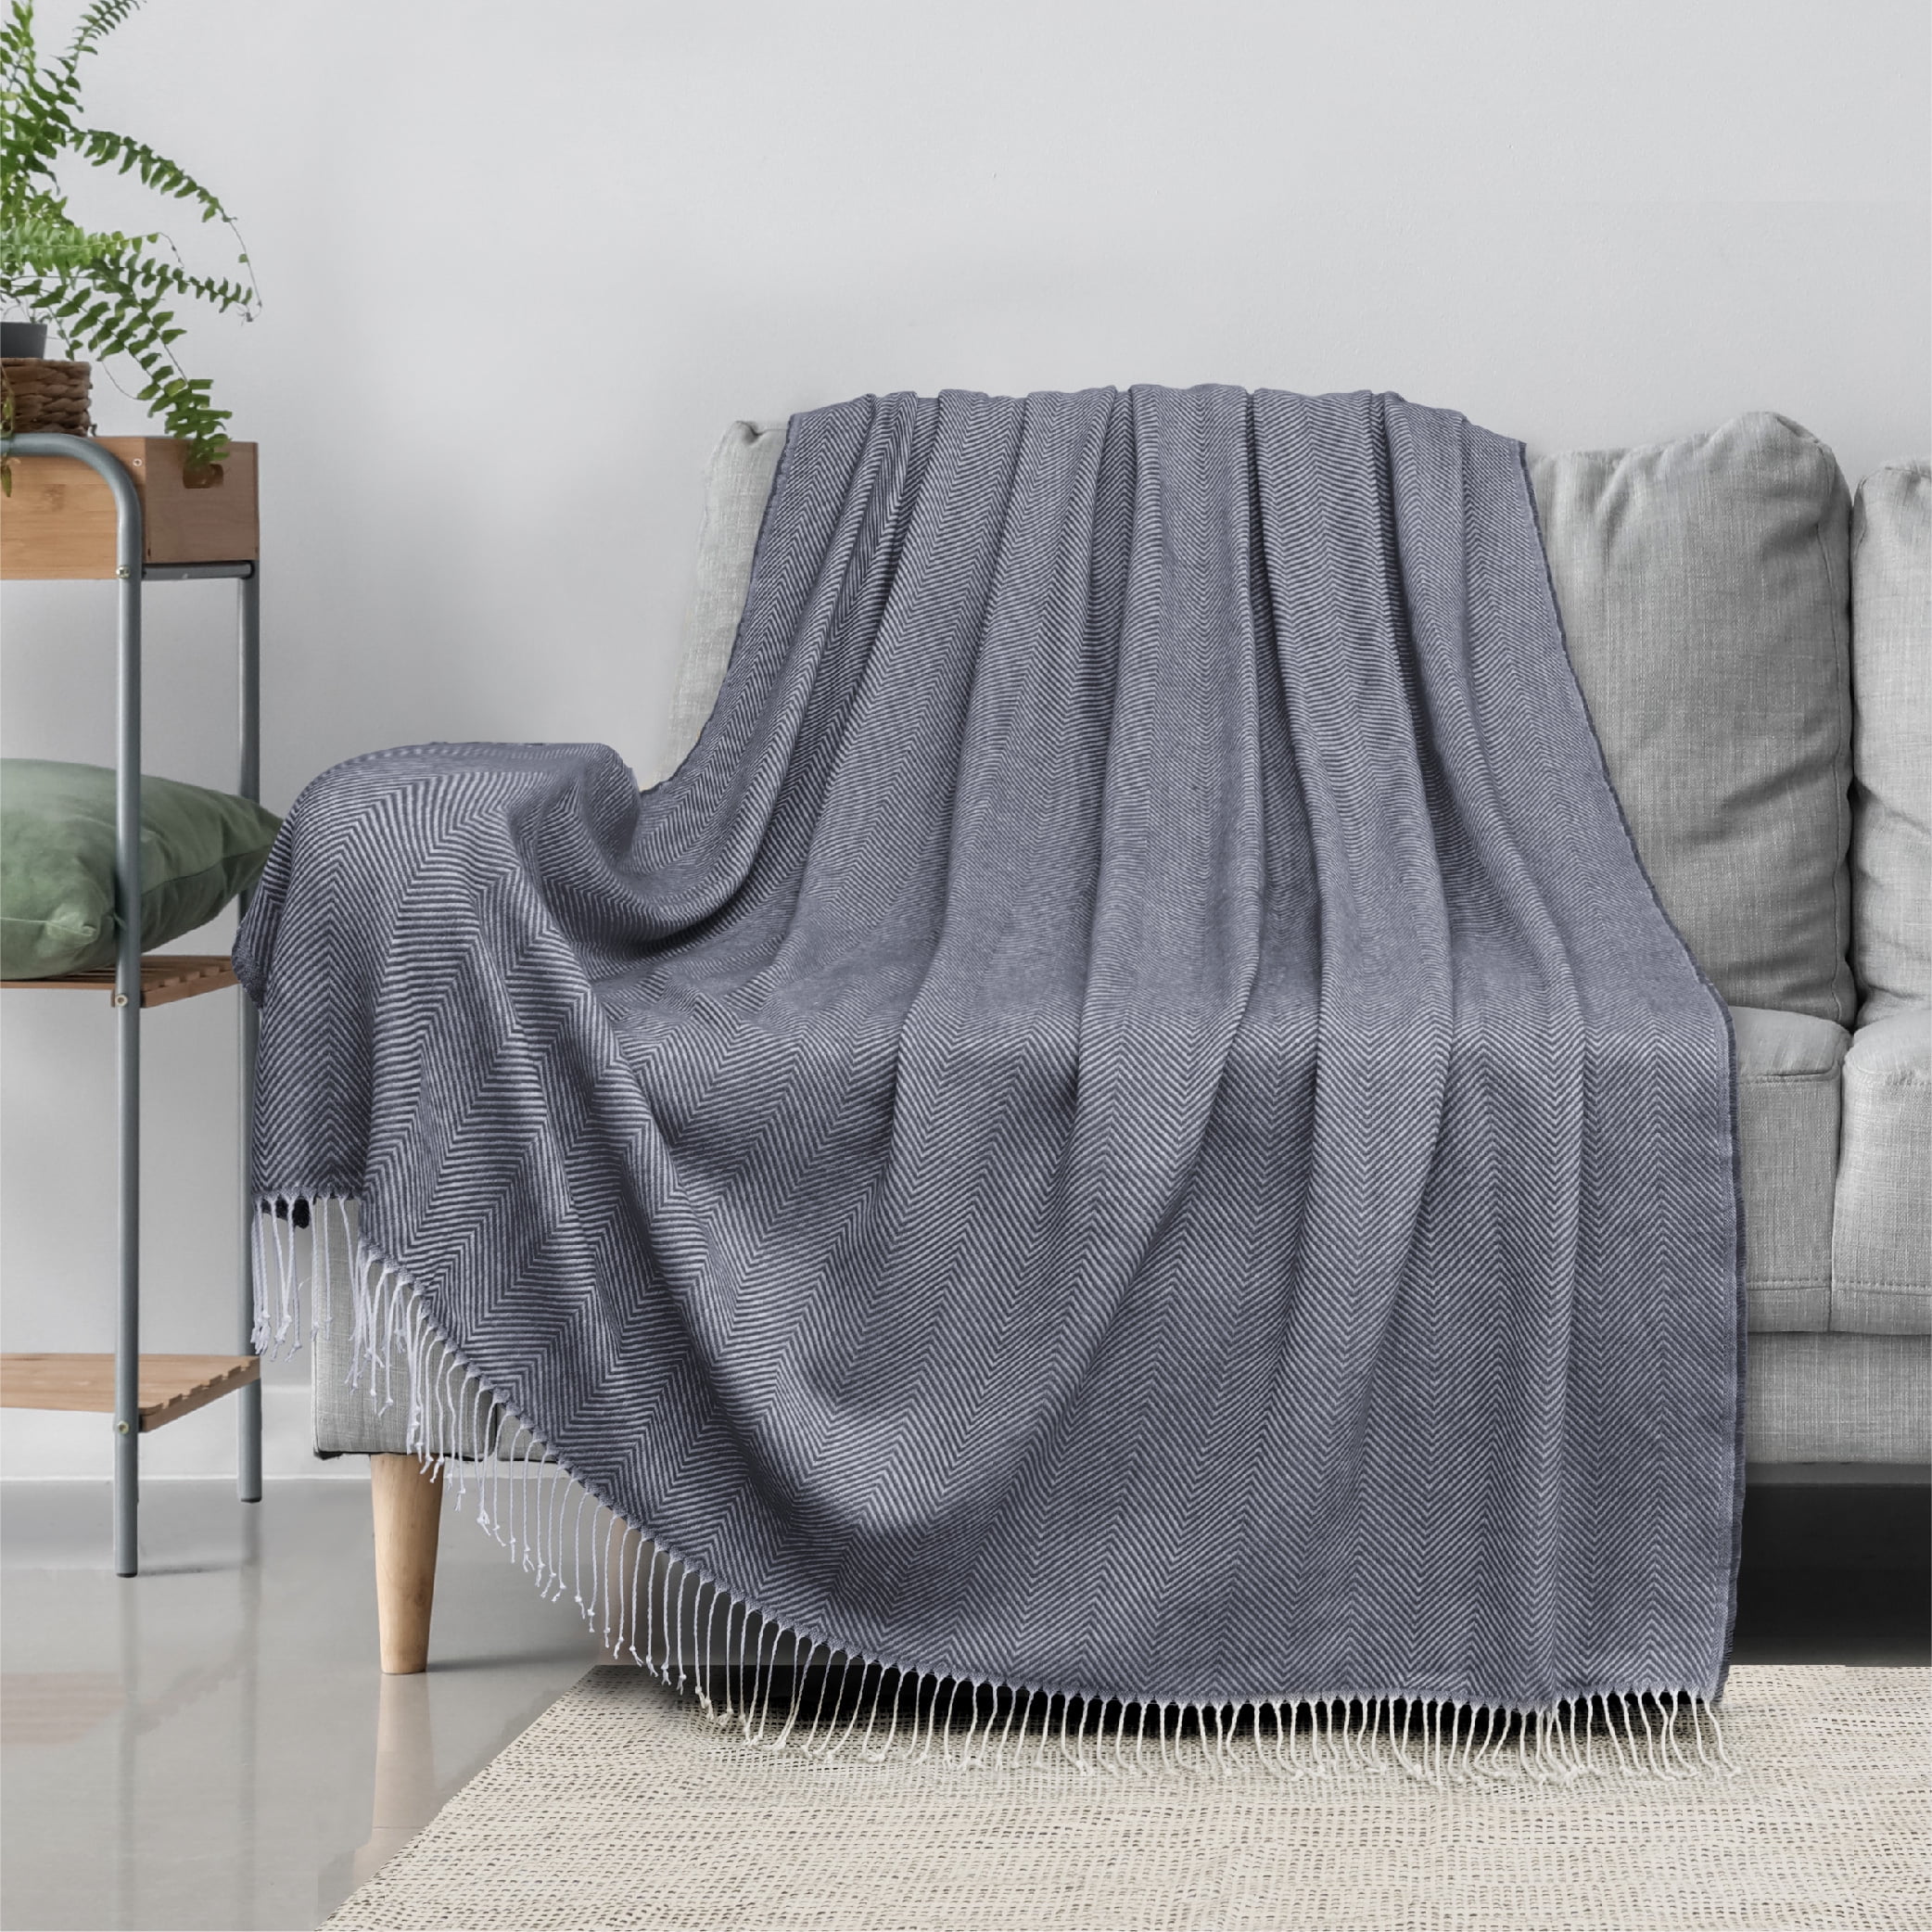 Tan Acrylic Yarn Woven Throw Blanket, 50x60